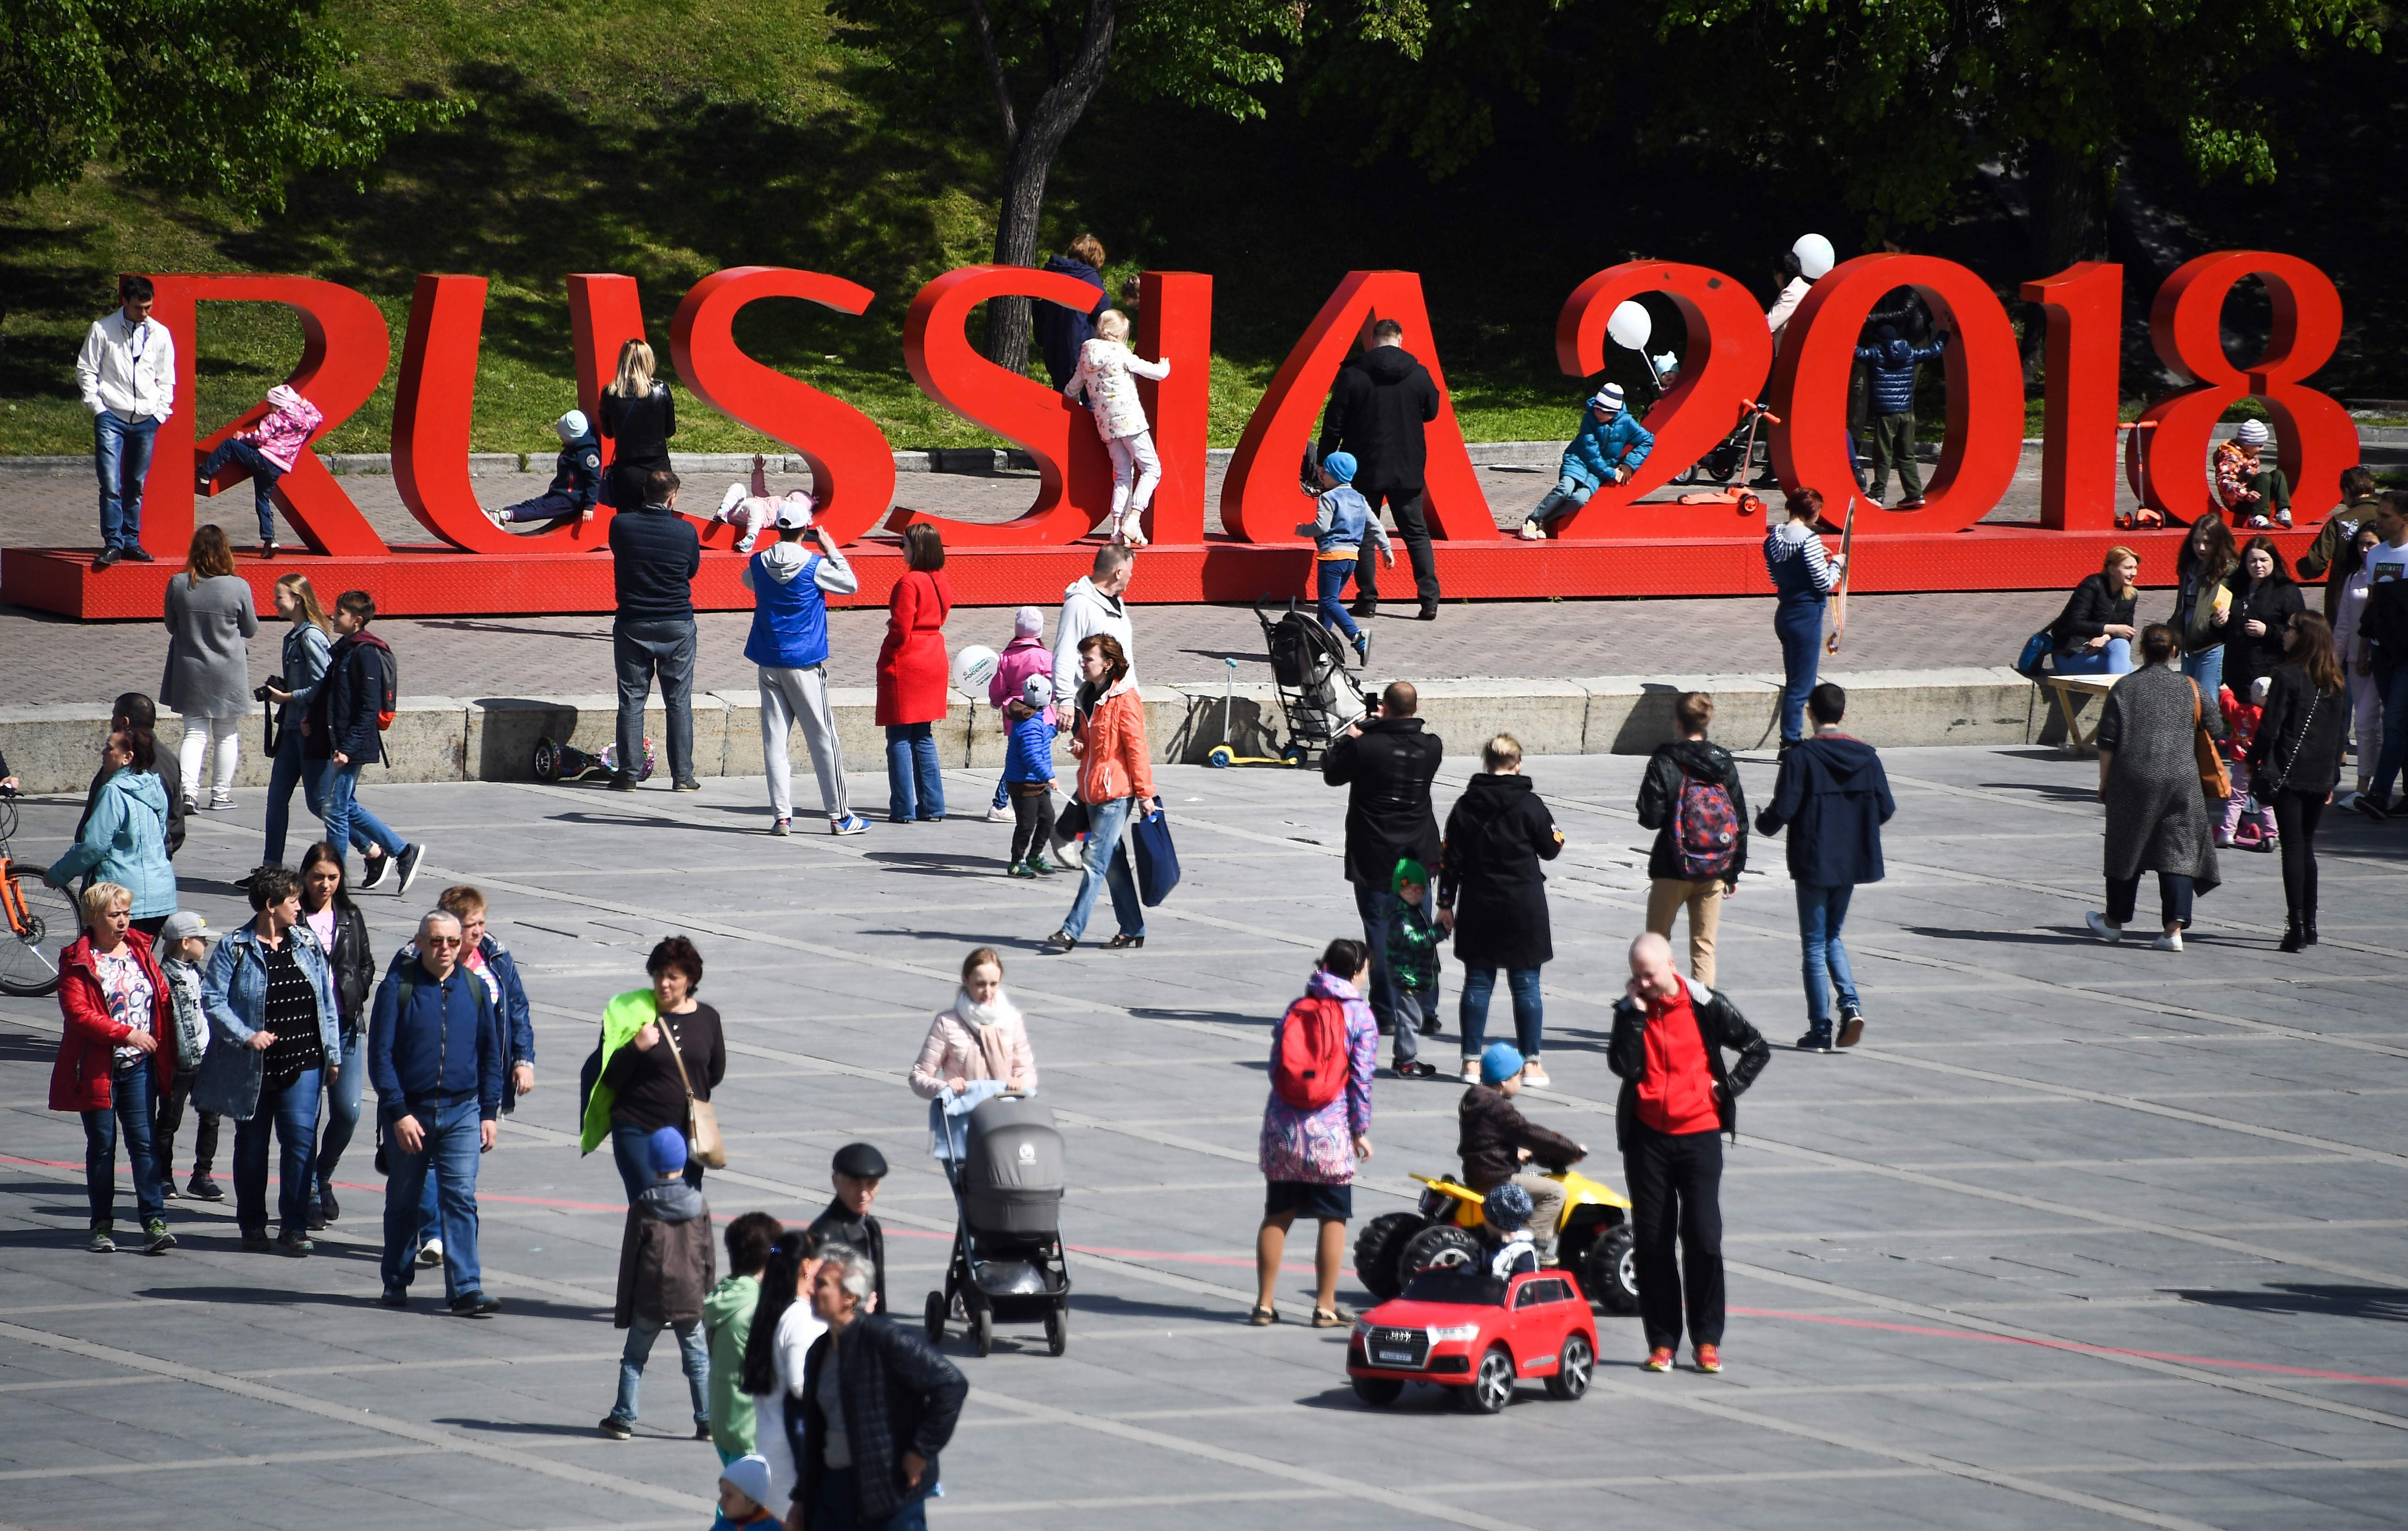 الزائرون يلتقطون الصور بجوار لافتة "روسيا 2018"